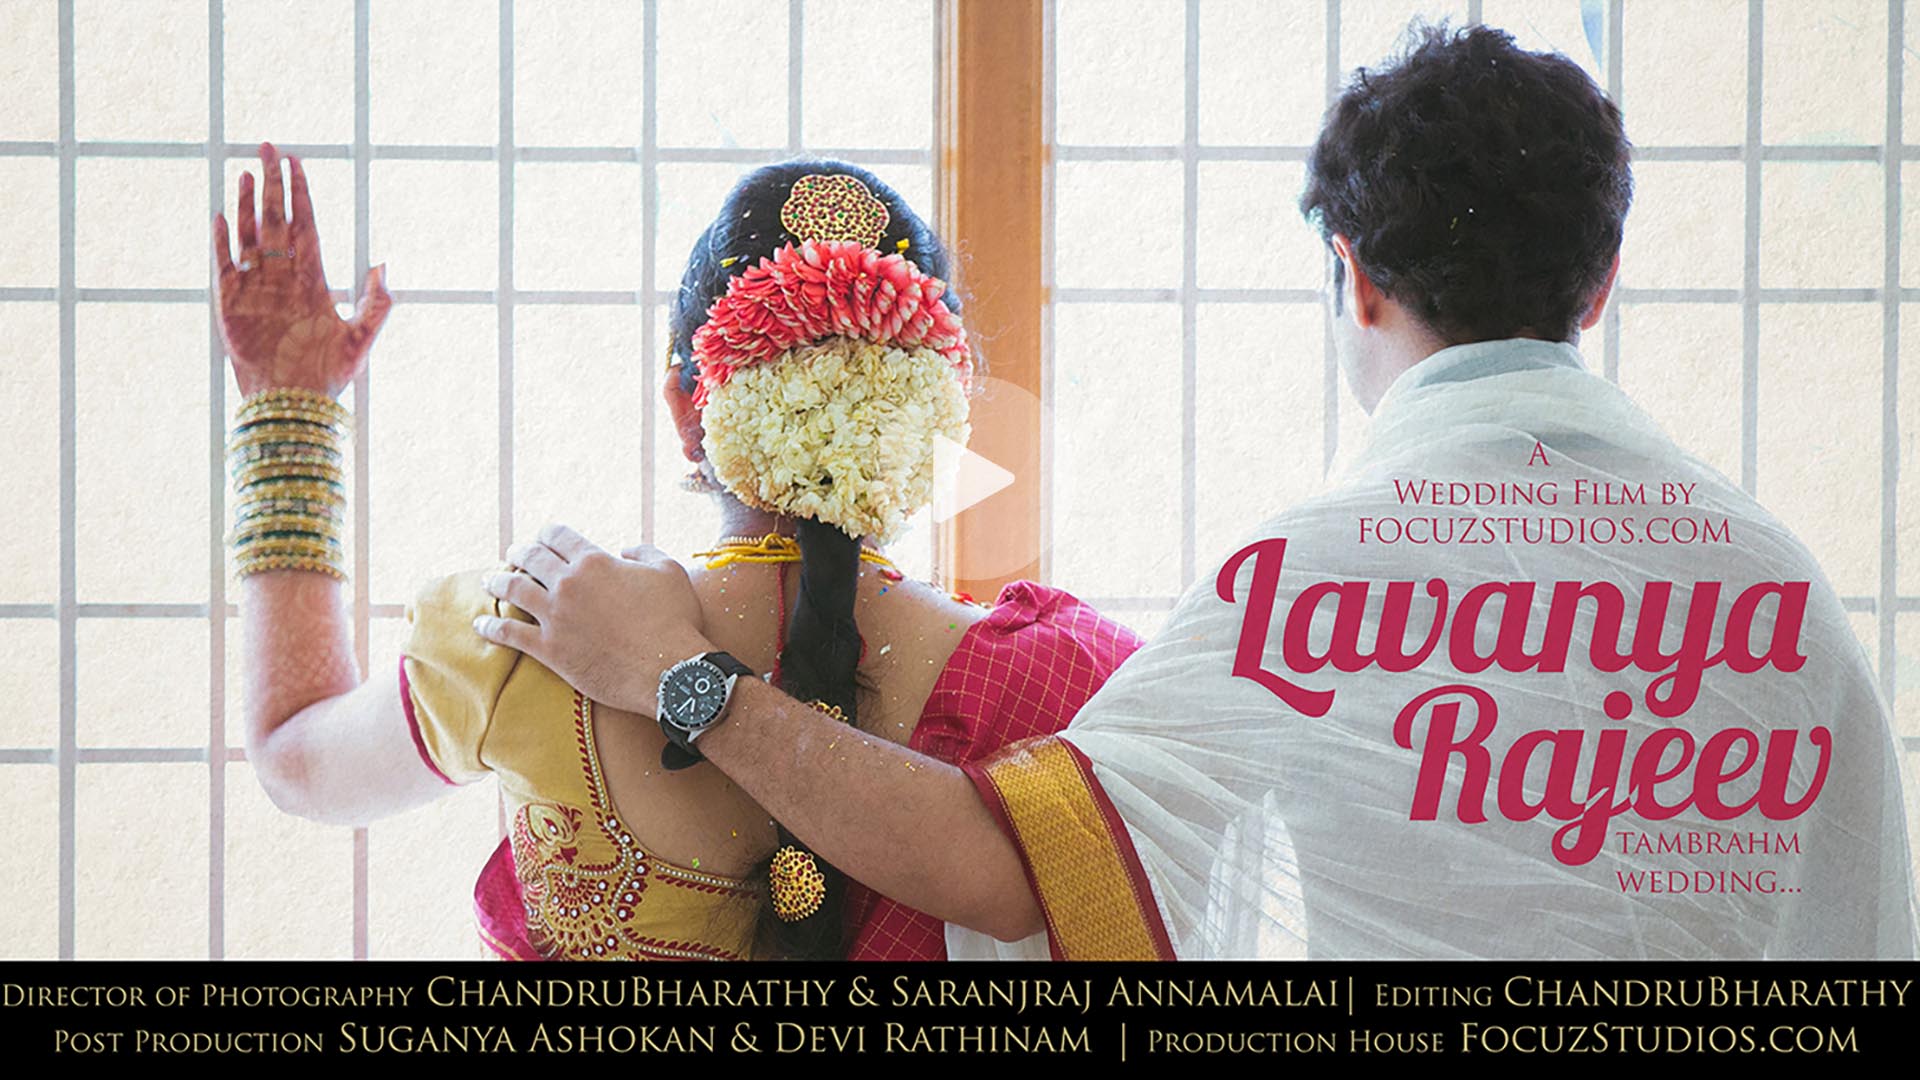 Tamil Brahmin Wedding Film Video in Chennai Tamil Nadu LAVANYA and RAJEEV